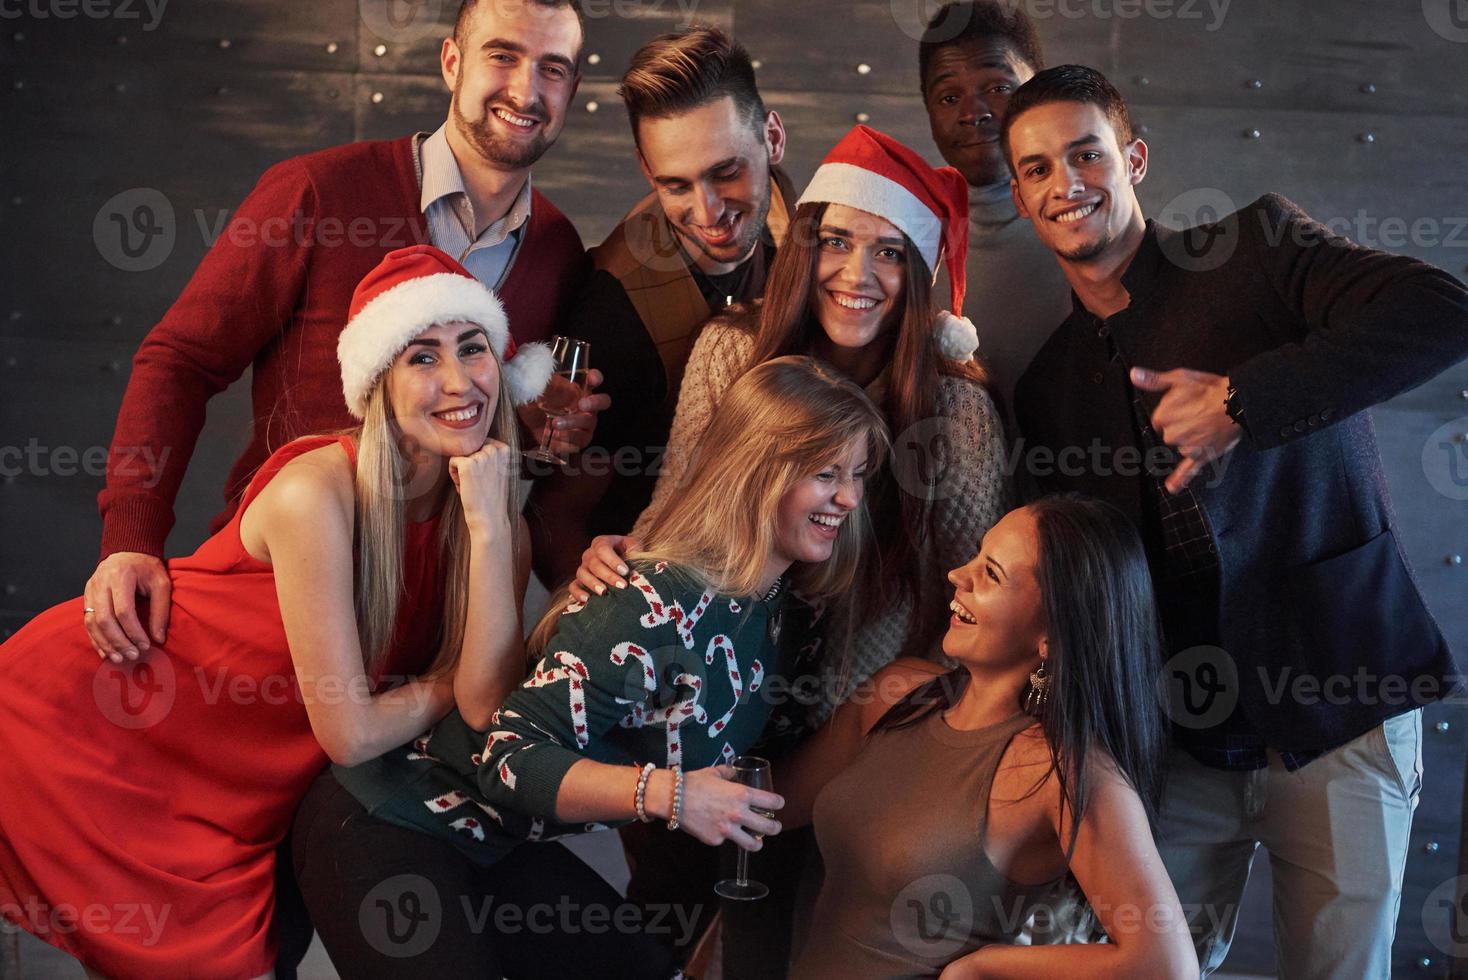 ano novo está chegando. grupo de jovens multiétnicos alegres com chapéu de Papai Noel na festa, posando de conceito de pessoas de estilo de vida emocional foto